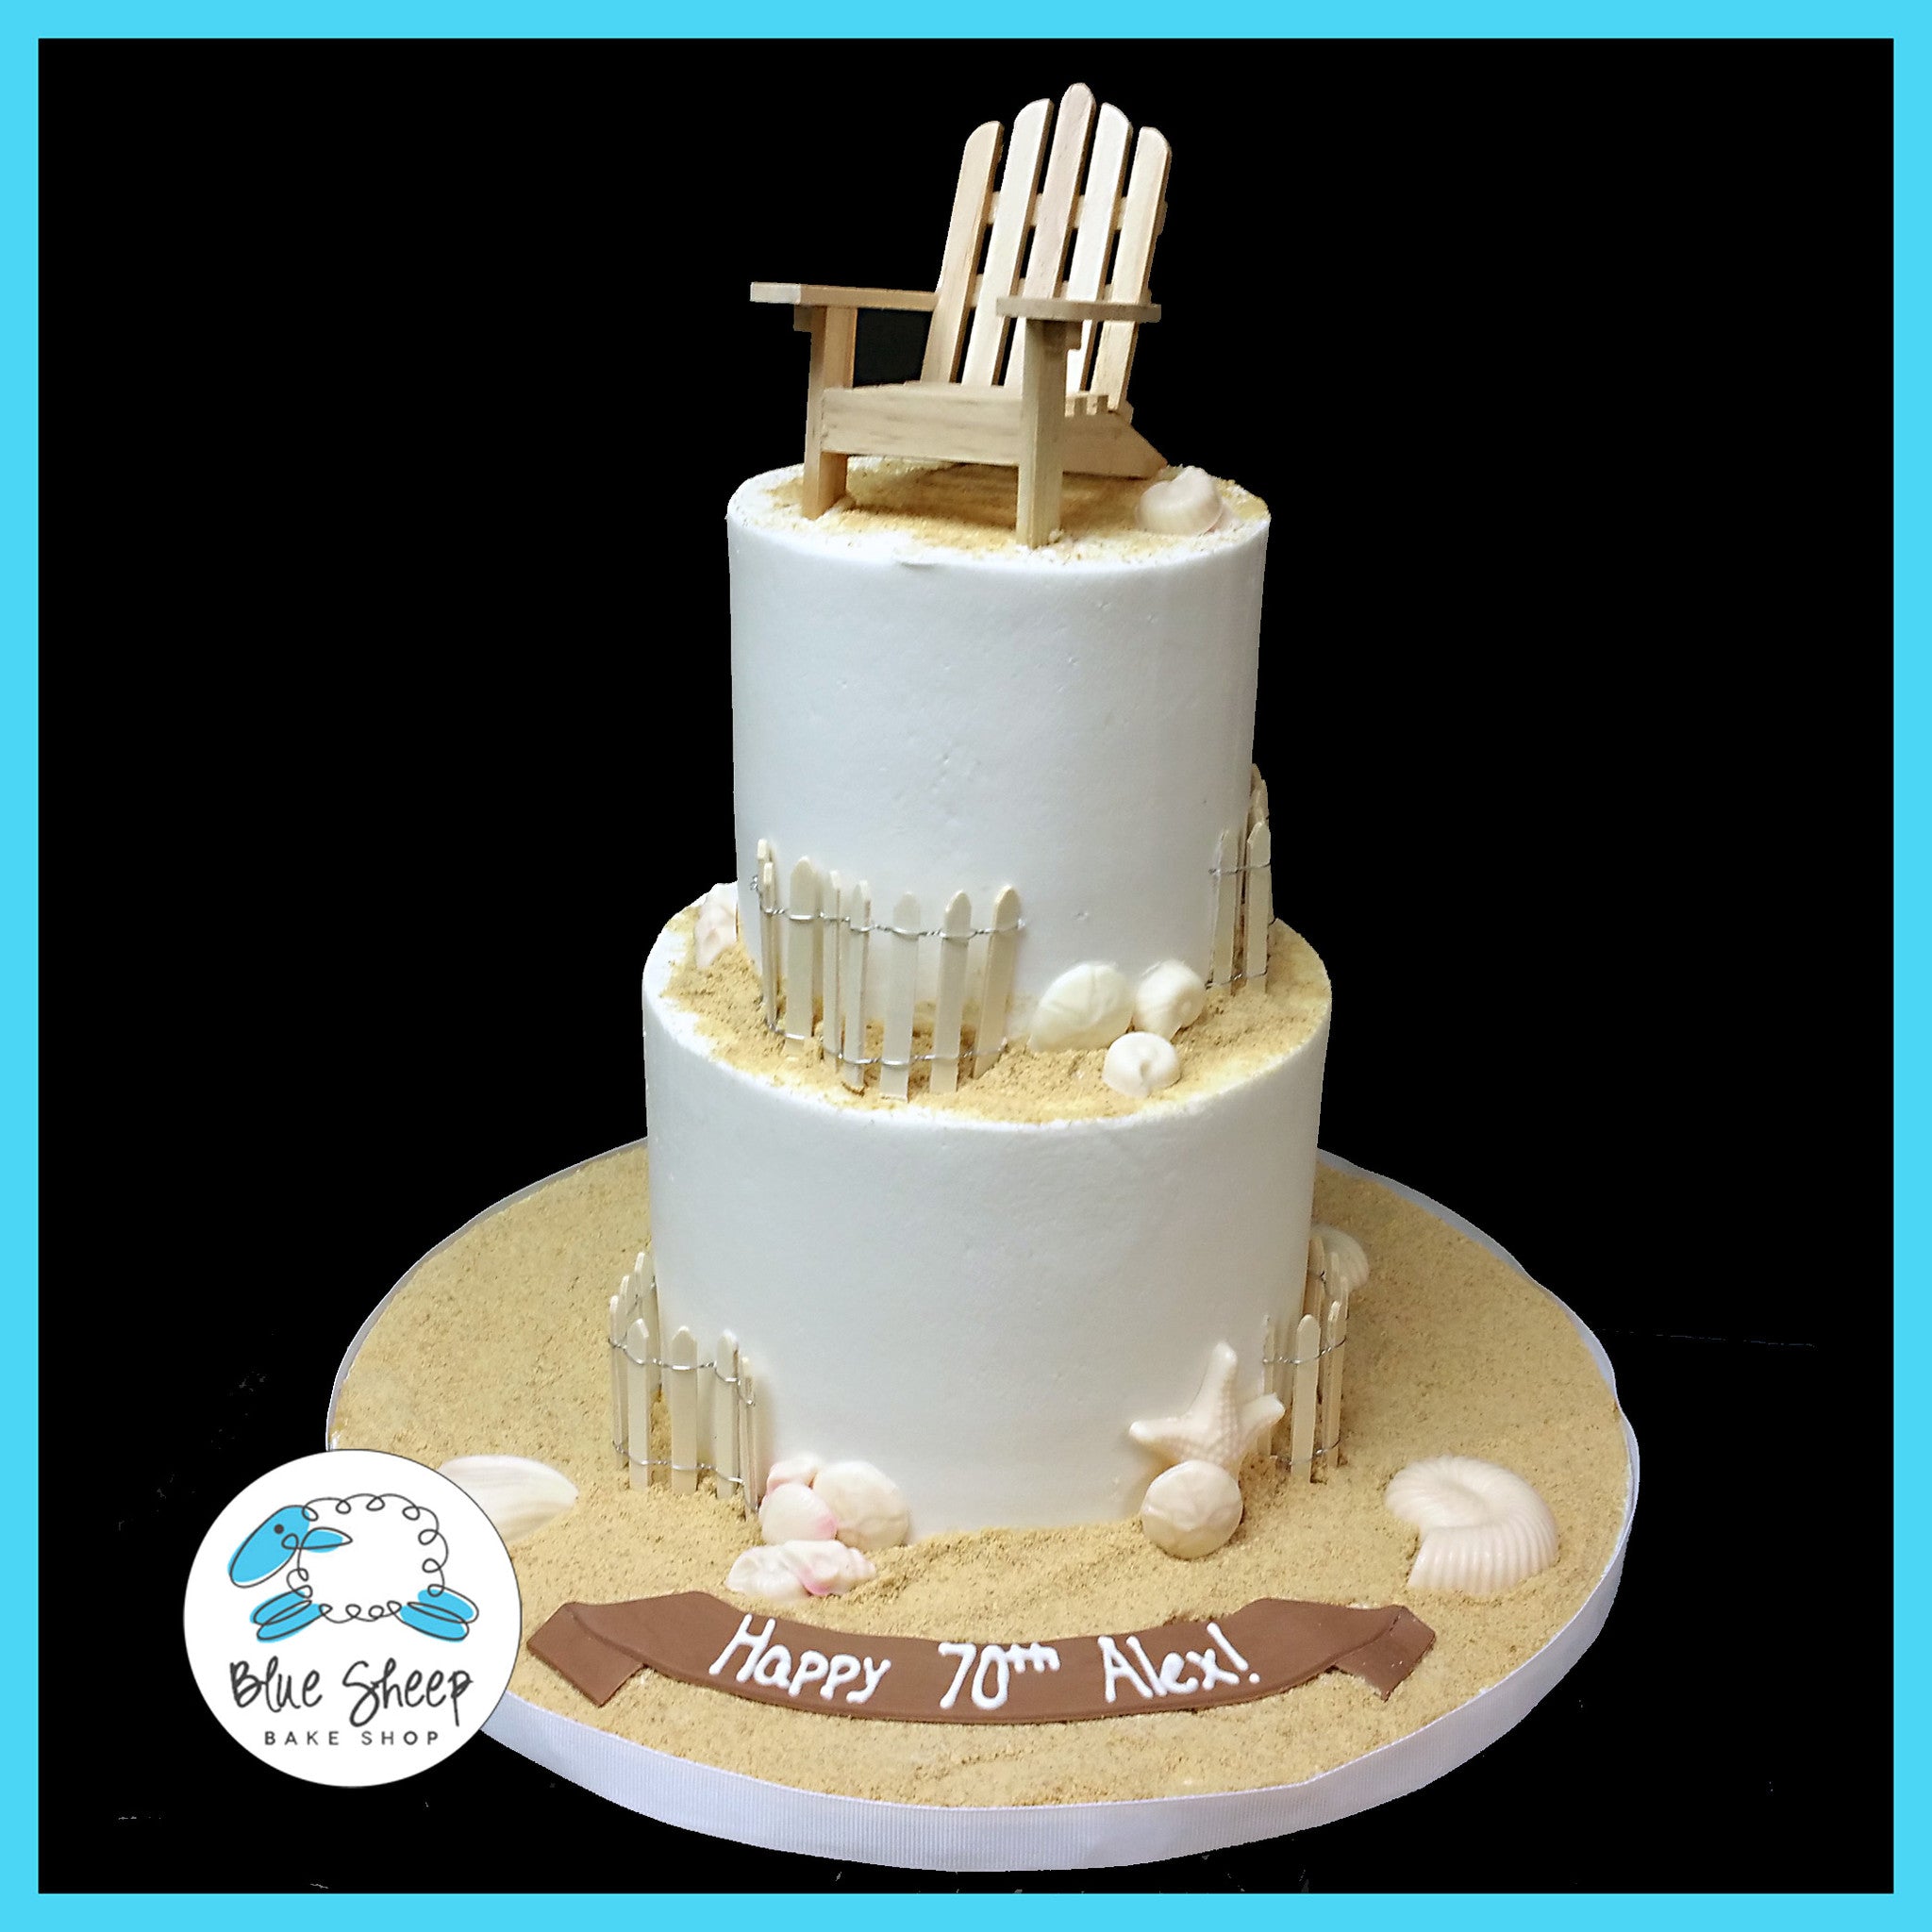 Life's a Beach Birthday Cake - Four Oaks Bakery